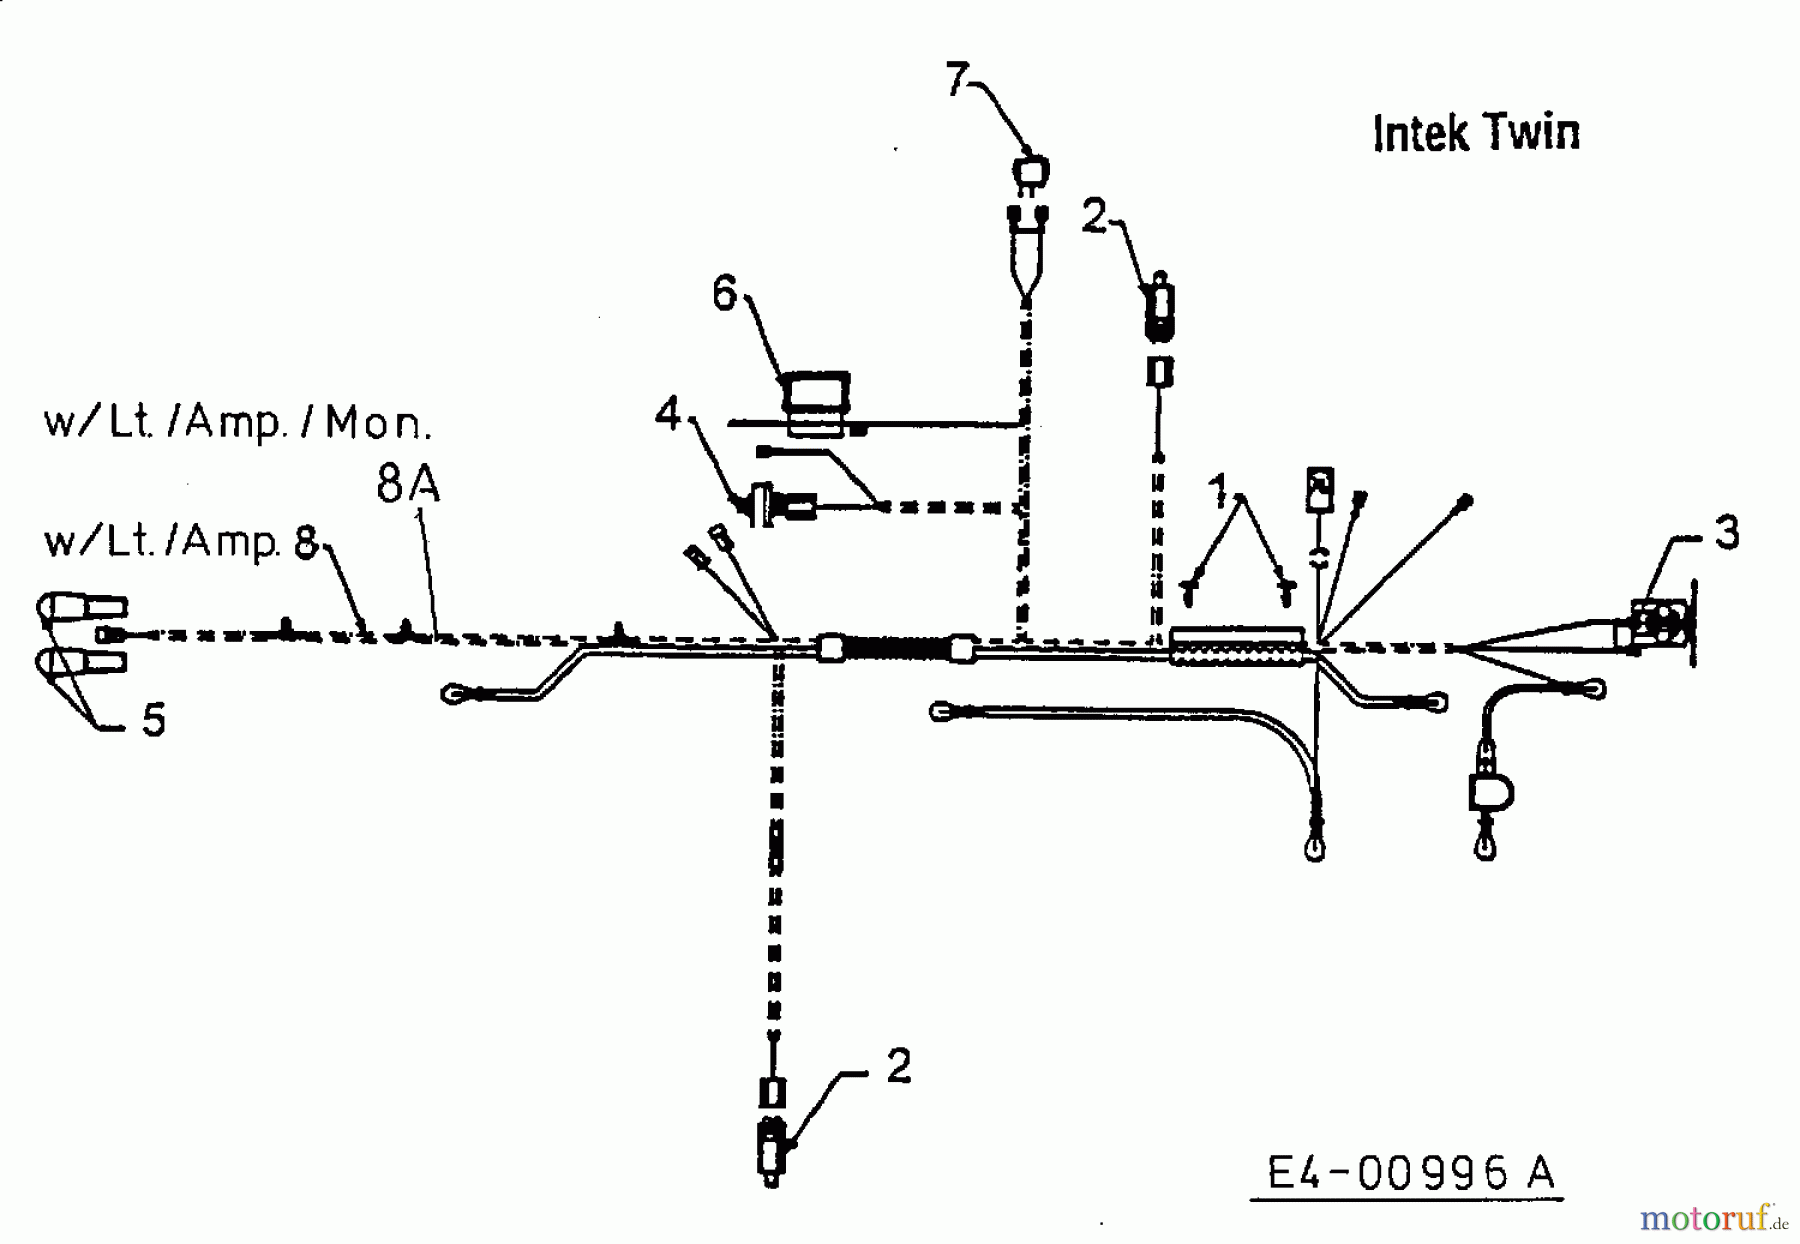  MTD Lawn tractors H 145 13AA698F678  (1999) Wiring diagram Intek Twin